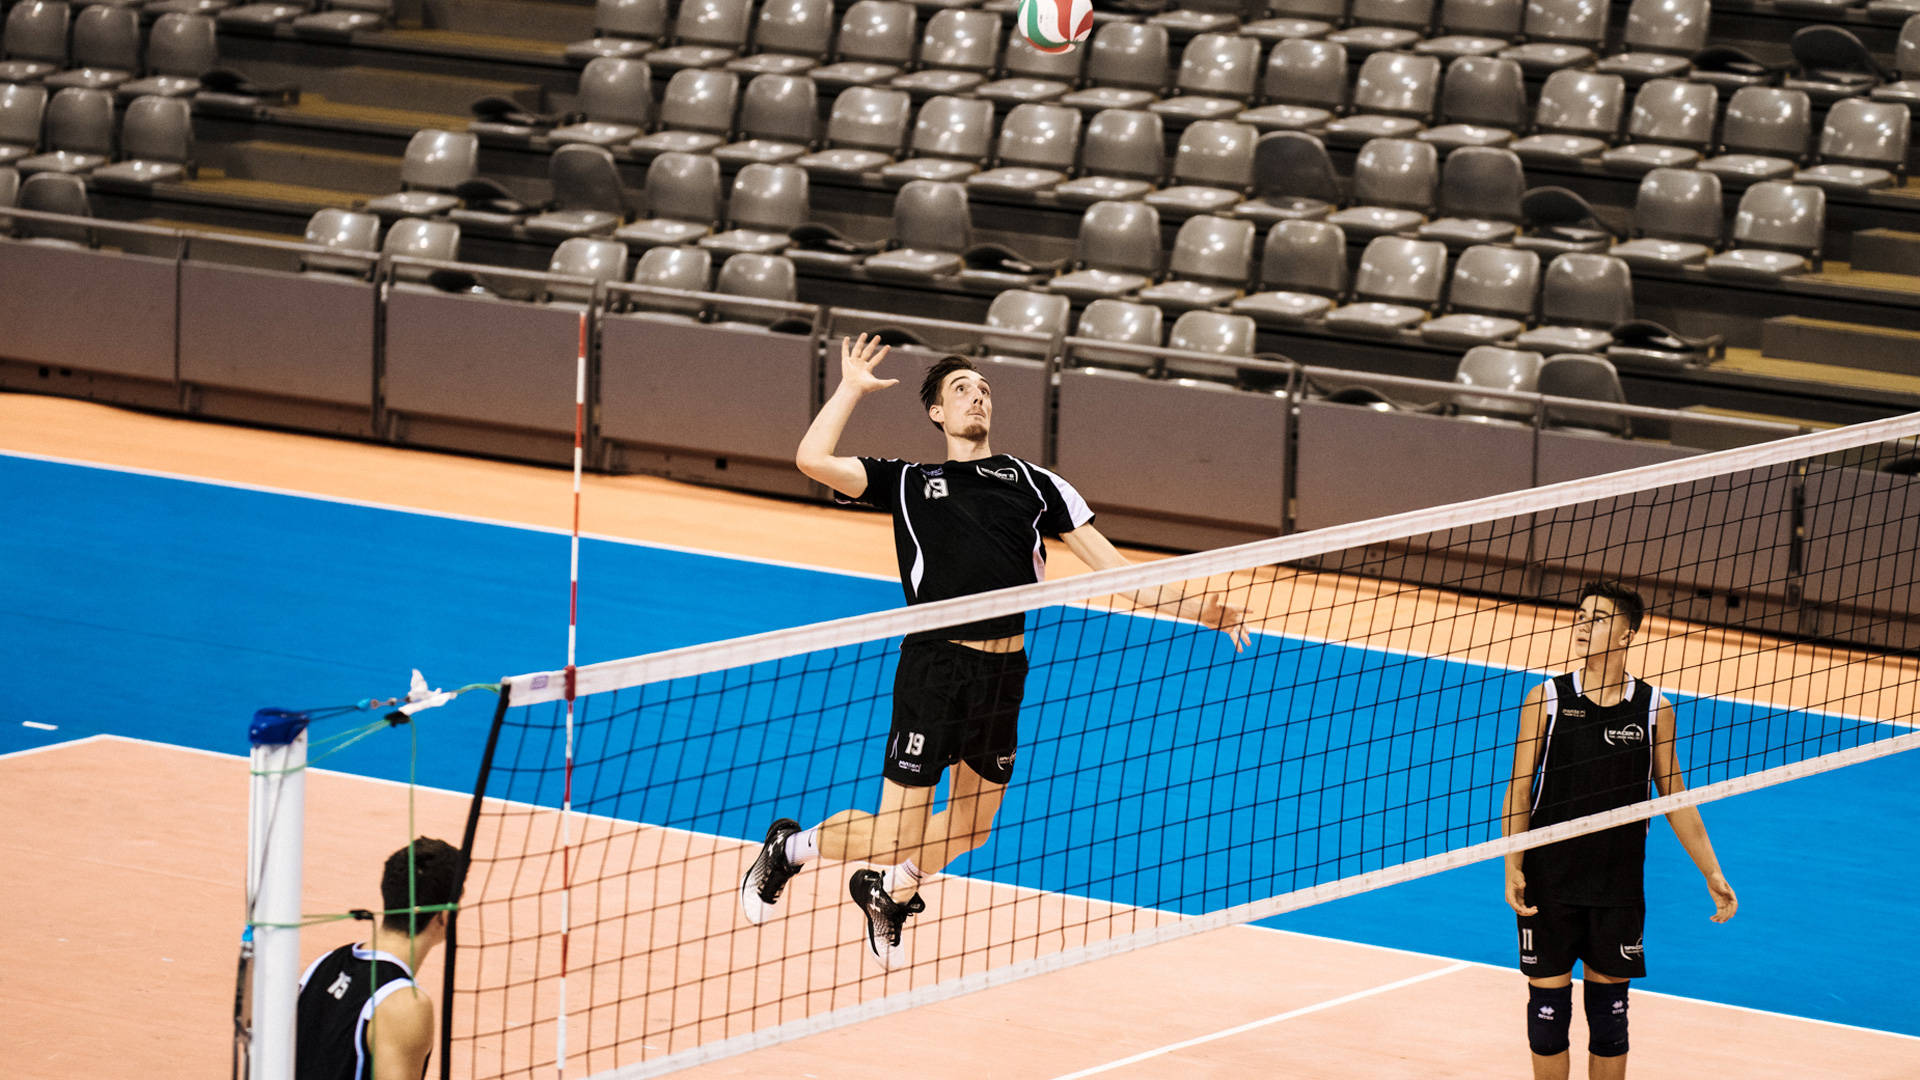 Machdich Bereit, Um Das Volleyballspiel In Der Halle Zu Dominieren! Wallpaper